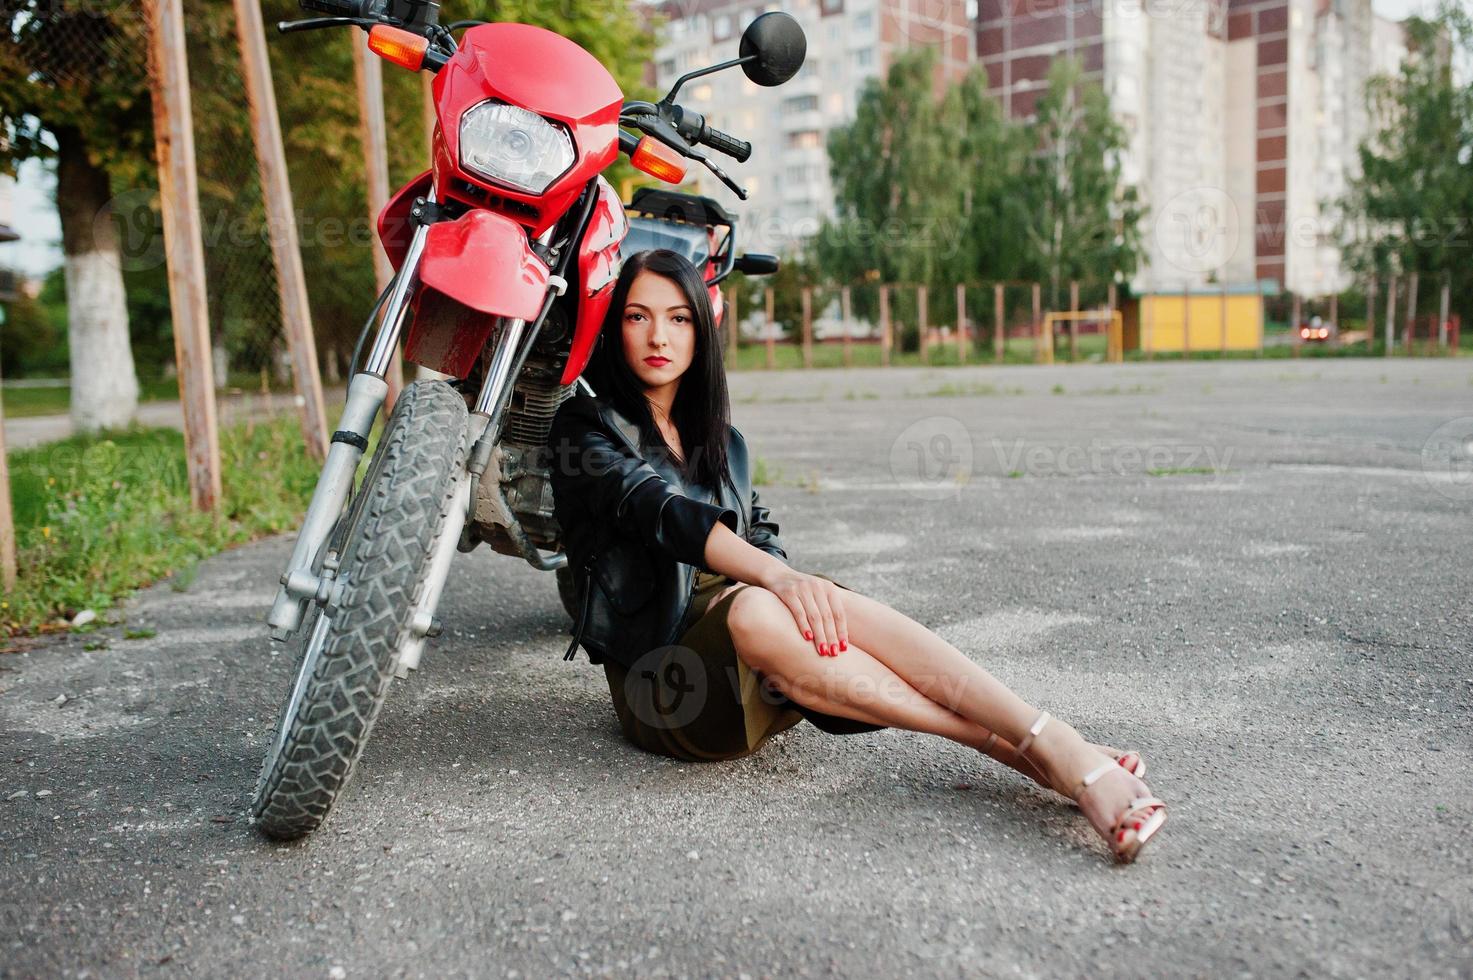 retrato de uma mulher legal e incrível na jaqueta de couro preta, sentado por uma bicicleta vermelha legal. foto